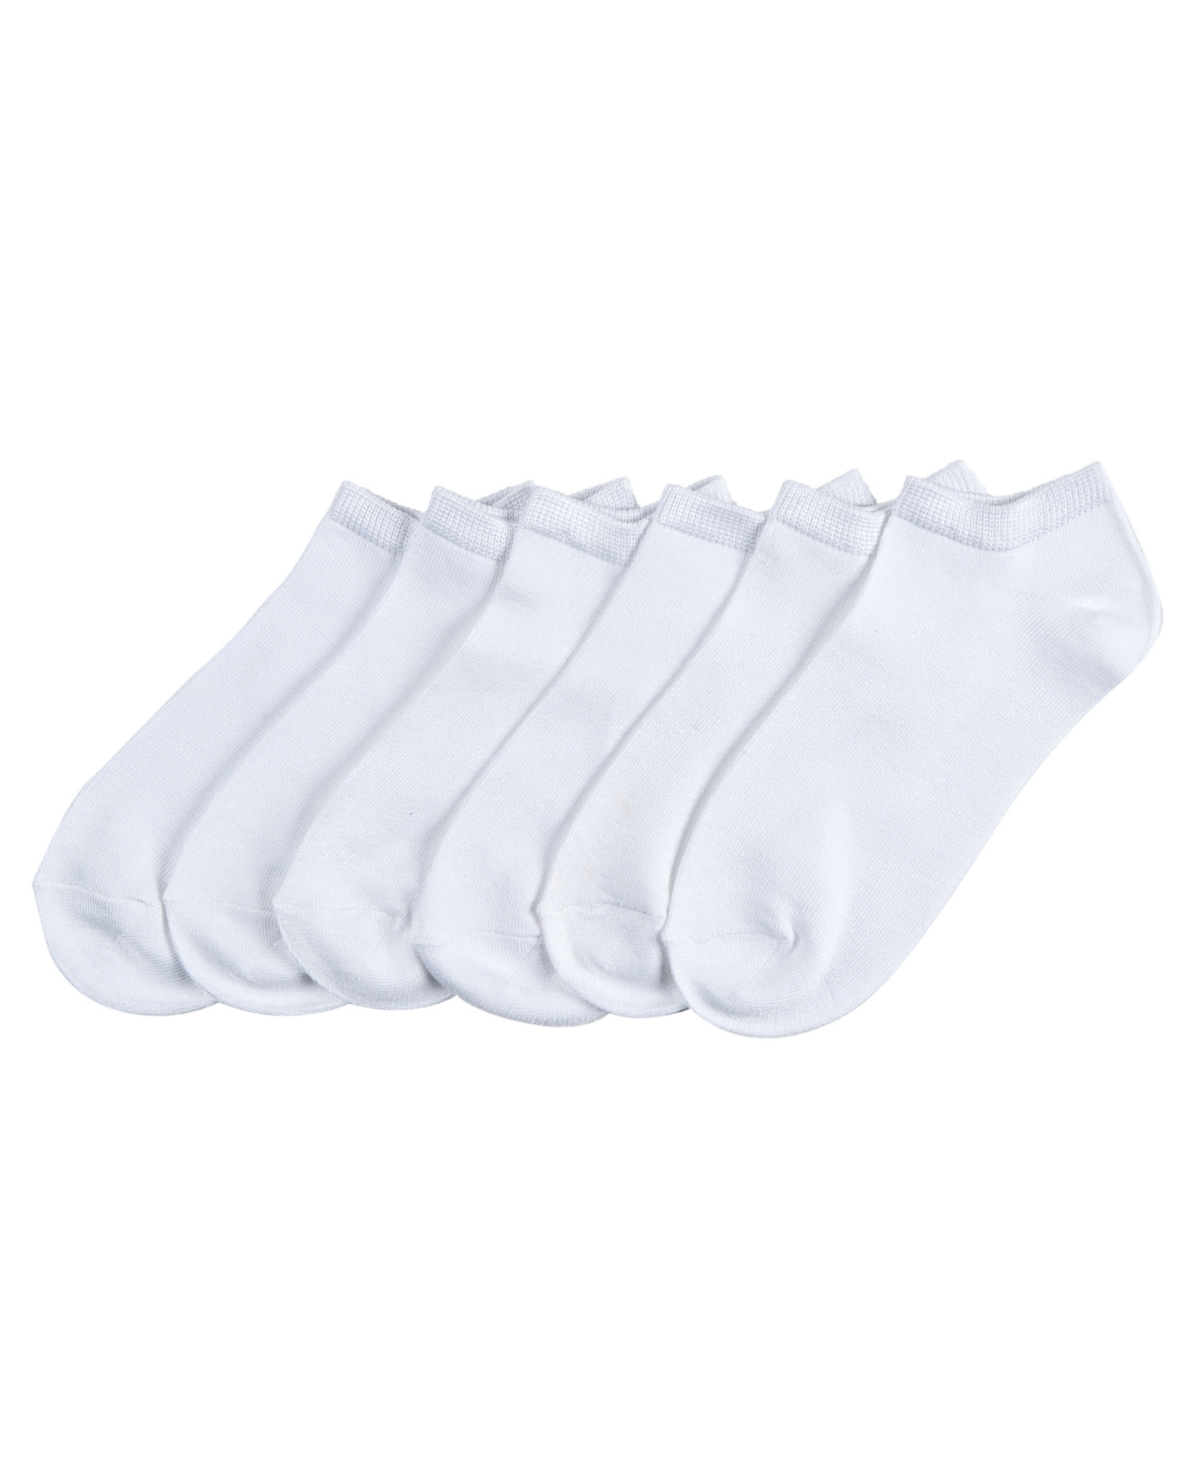 6 Pack Super-Soft Liner Socks - Neon Assorted